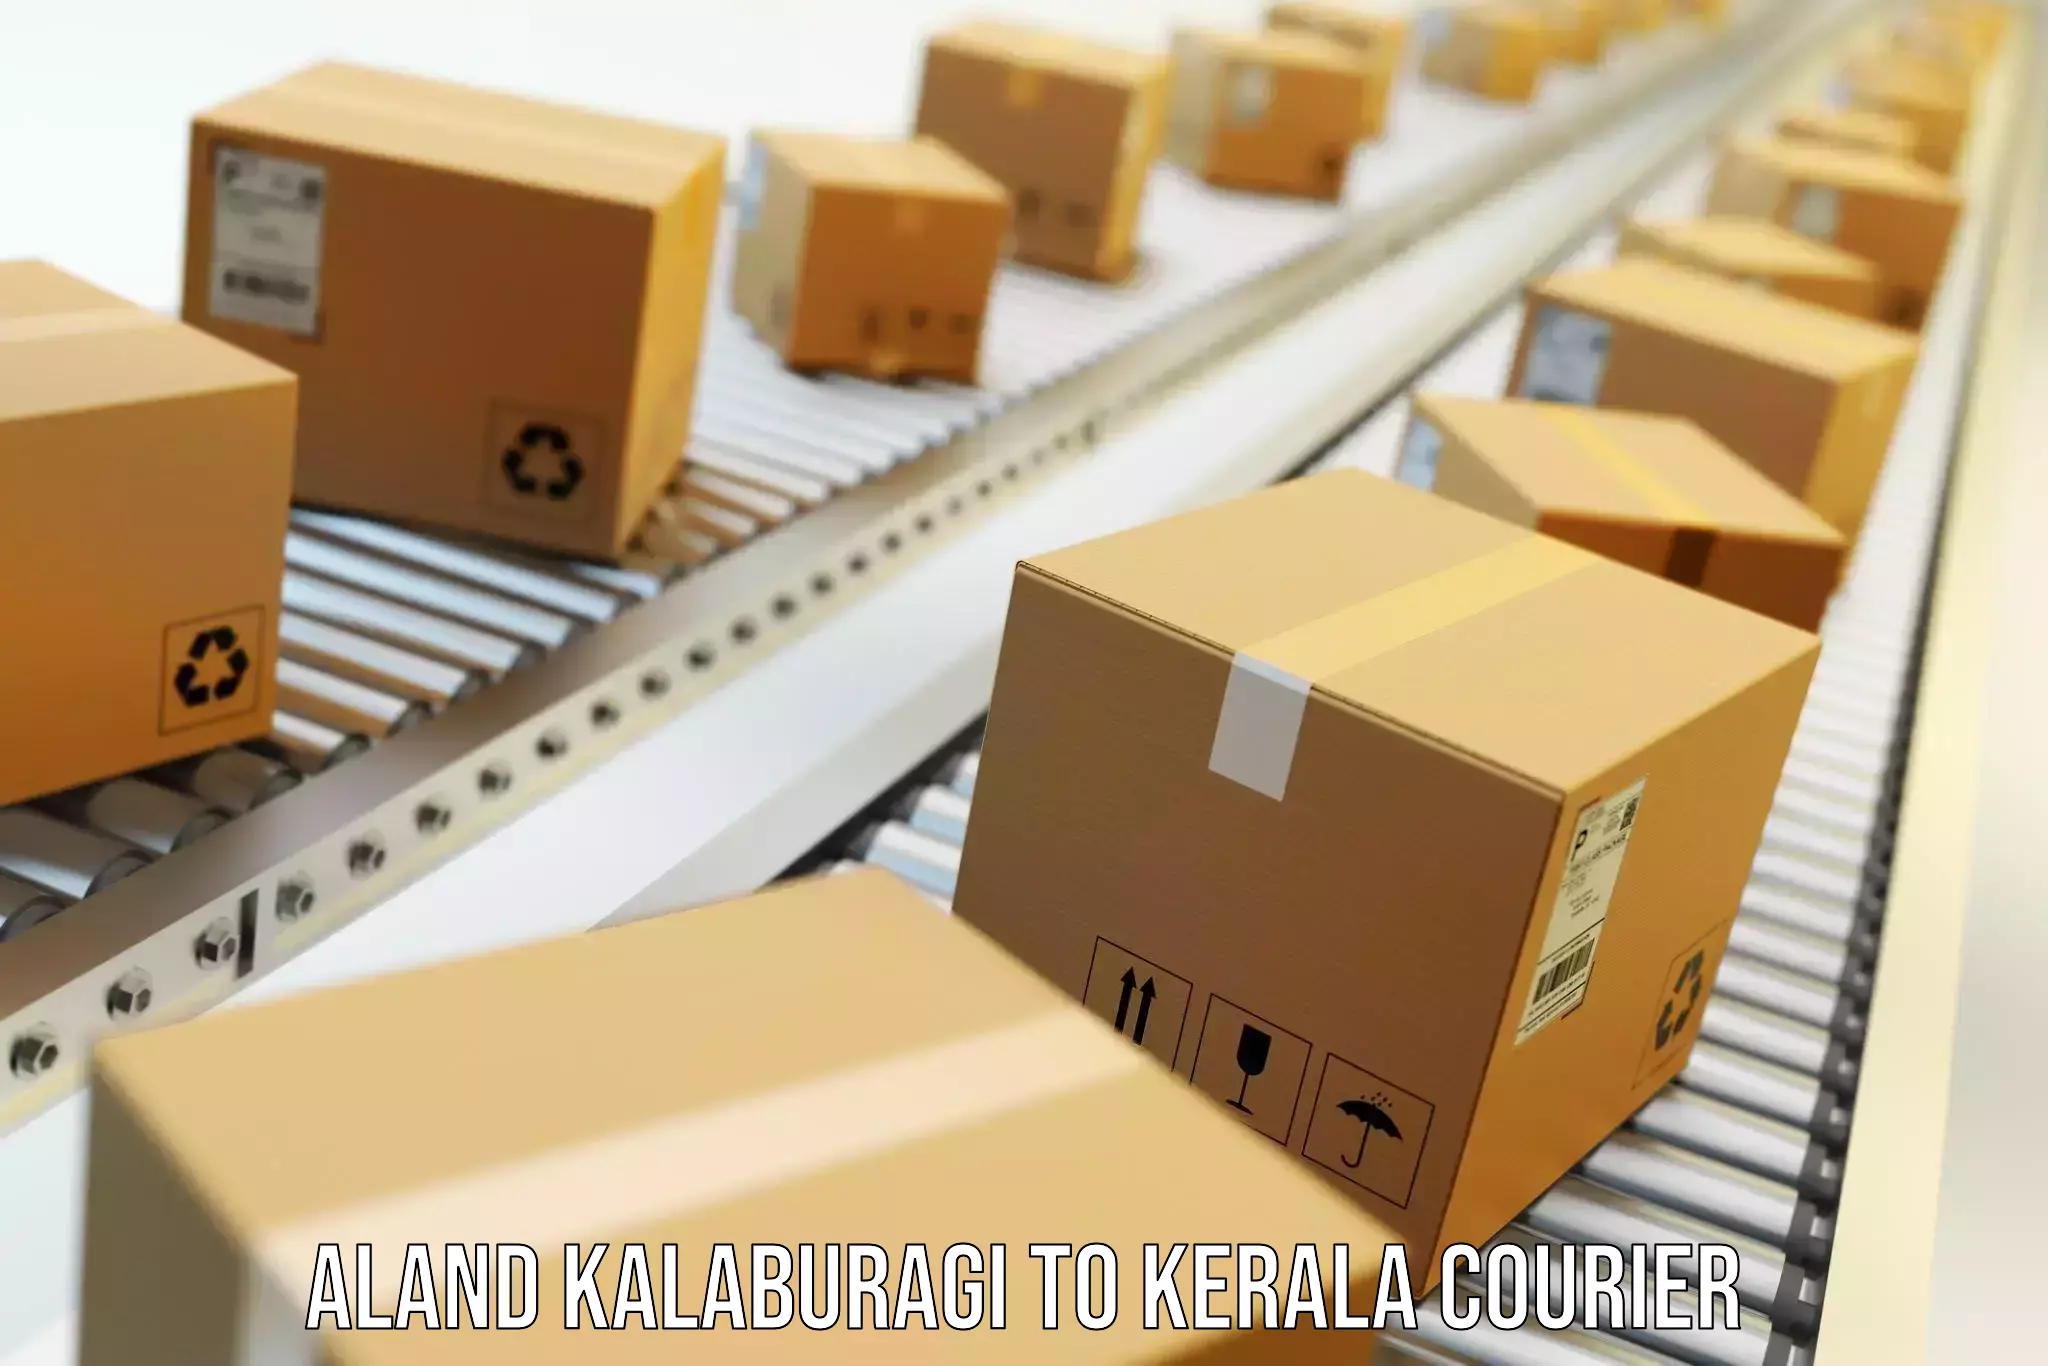 Professional goods transport Aland Kalaburagi to Kerala